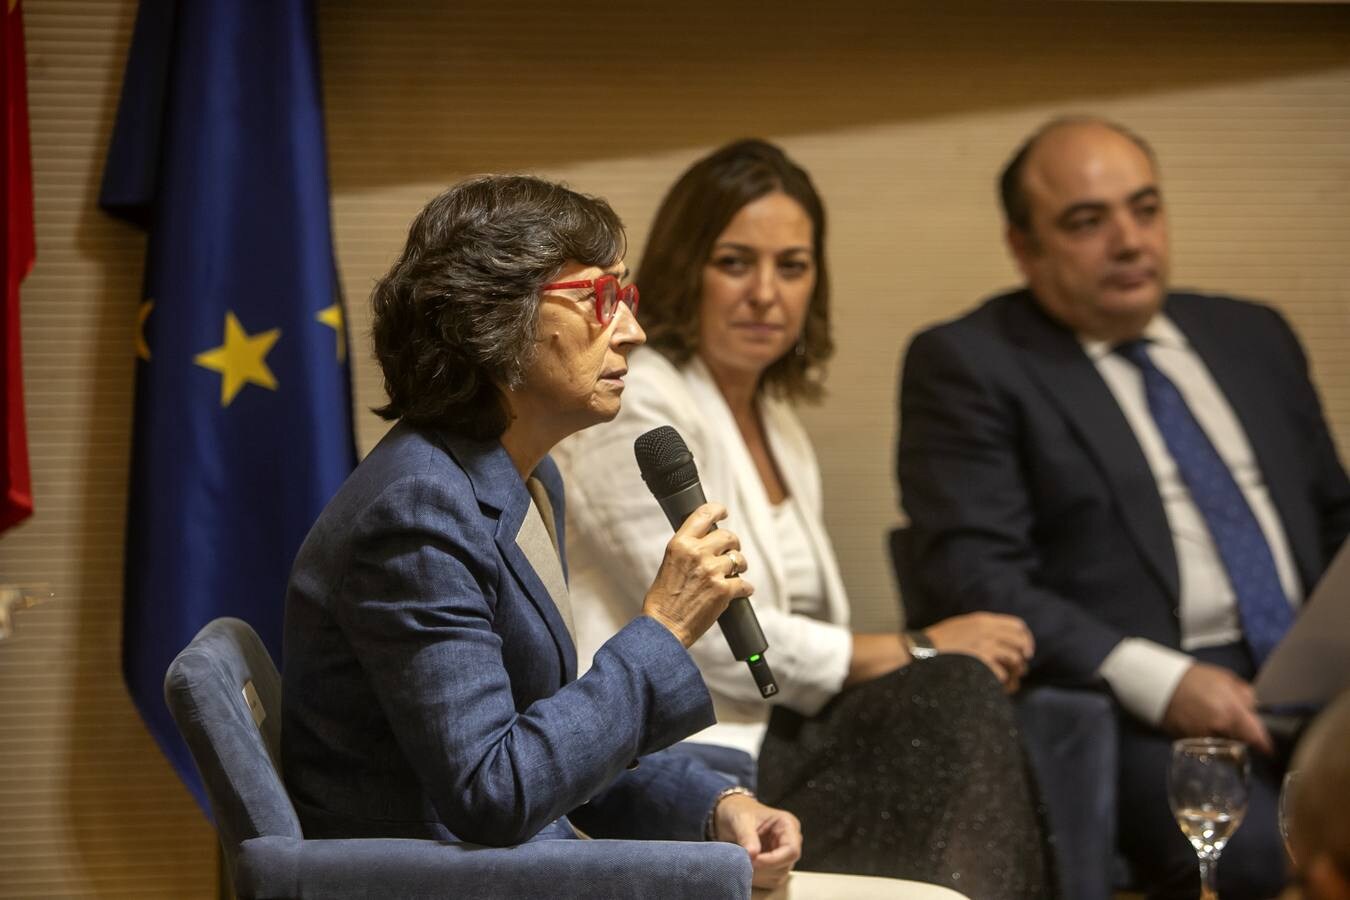 La charla de los alcaldes de Córdoba en el Colegio de Abogados, en imágenes